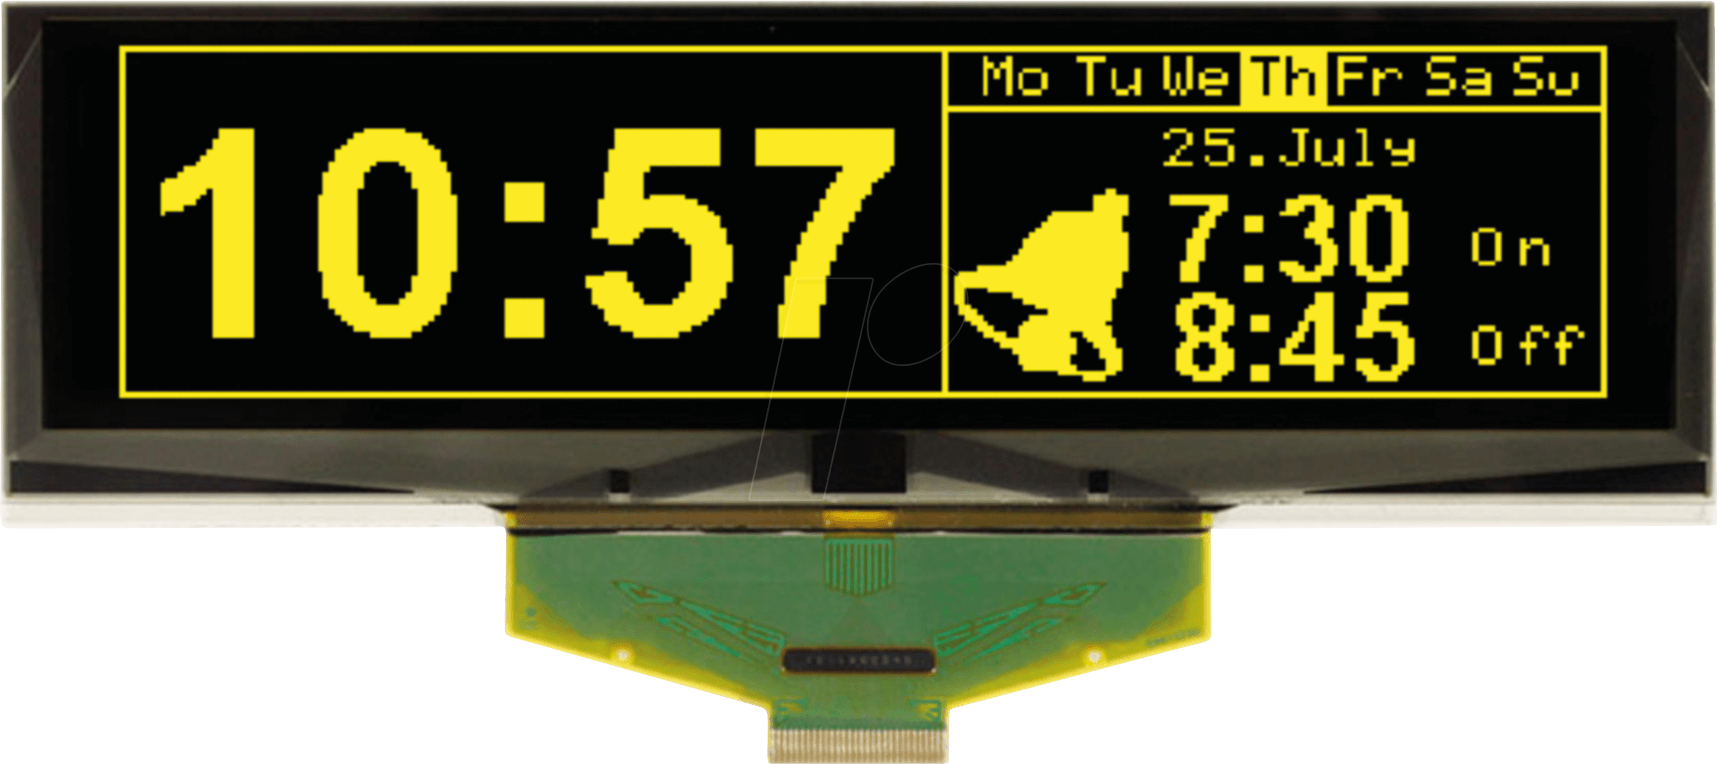 EA W256064-XGLG - Grafik-OLED, 5,5 Zoll, 146x45mm, 256x64 Dot, gelb von DISPLAY VISIONS